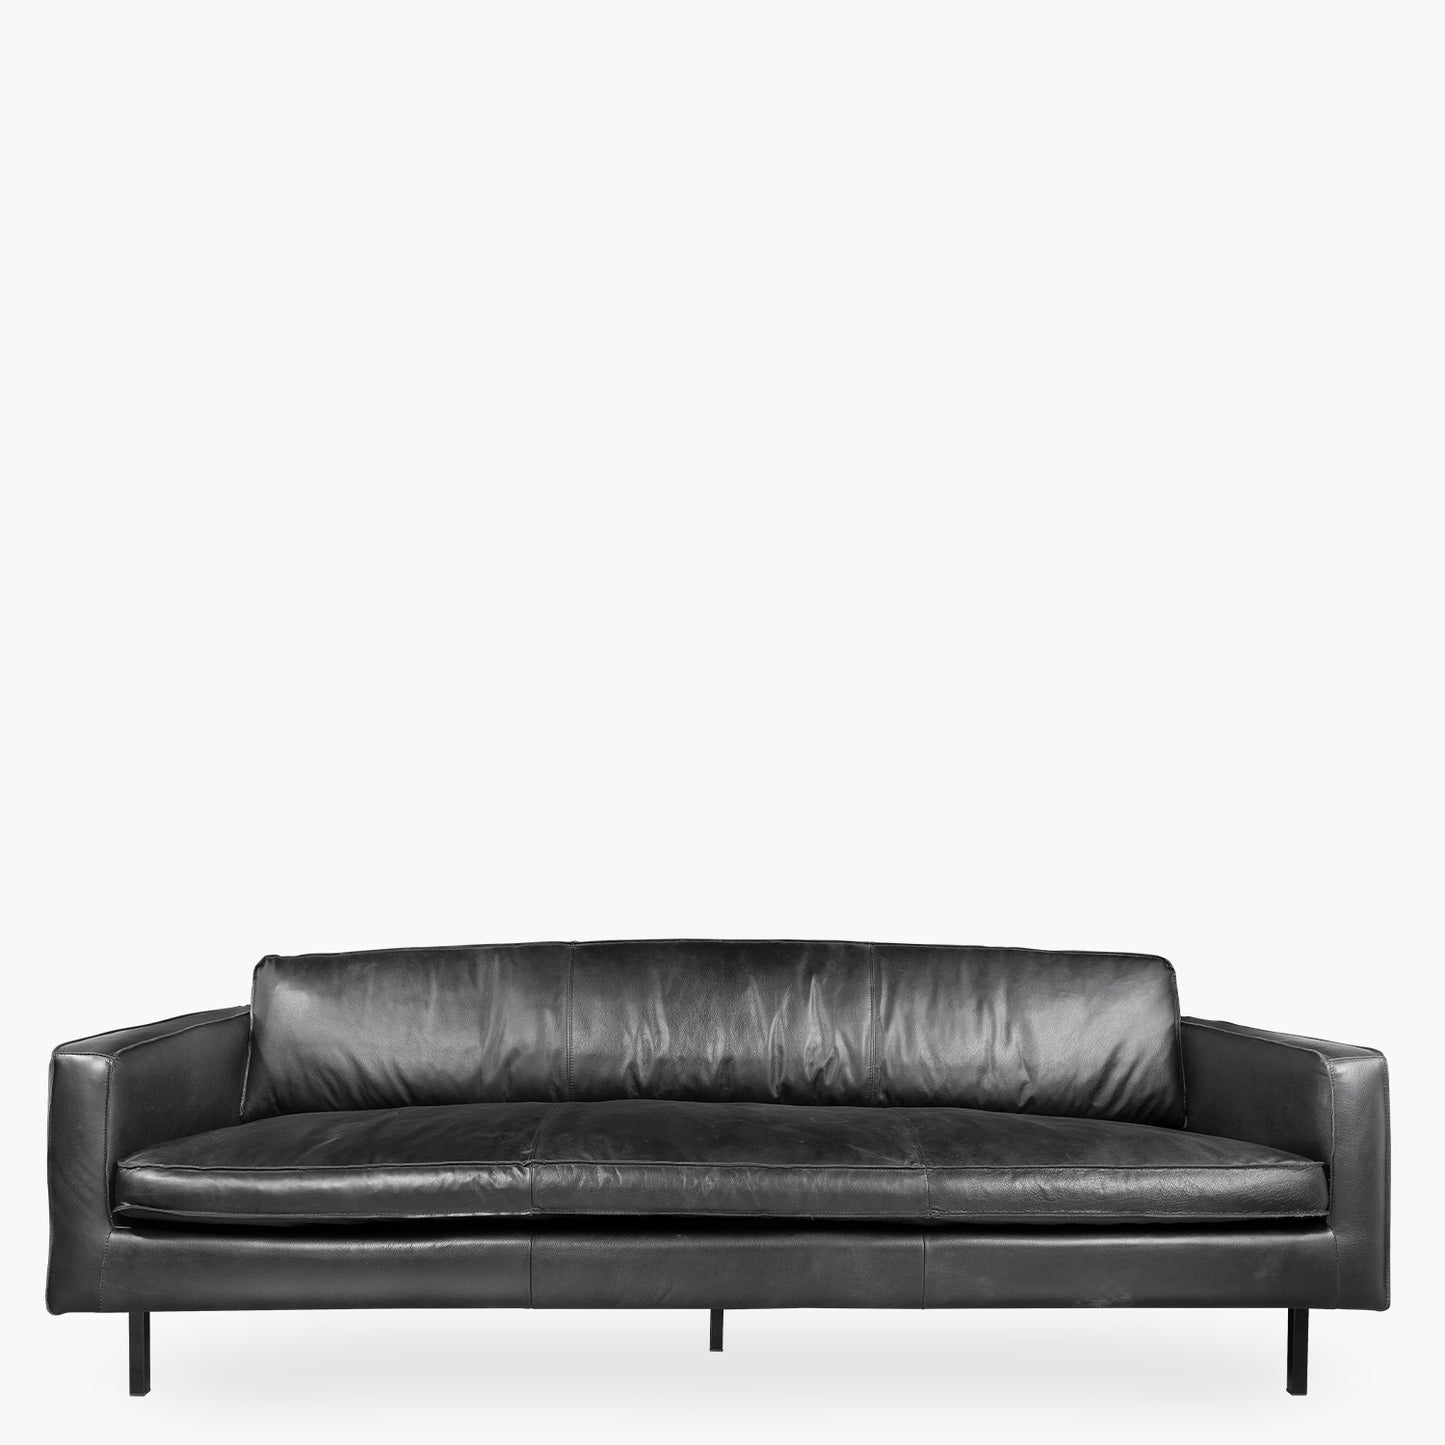 sofa-3c-sinatra-cuero-negro-form-design